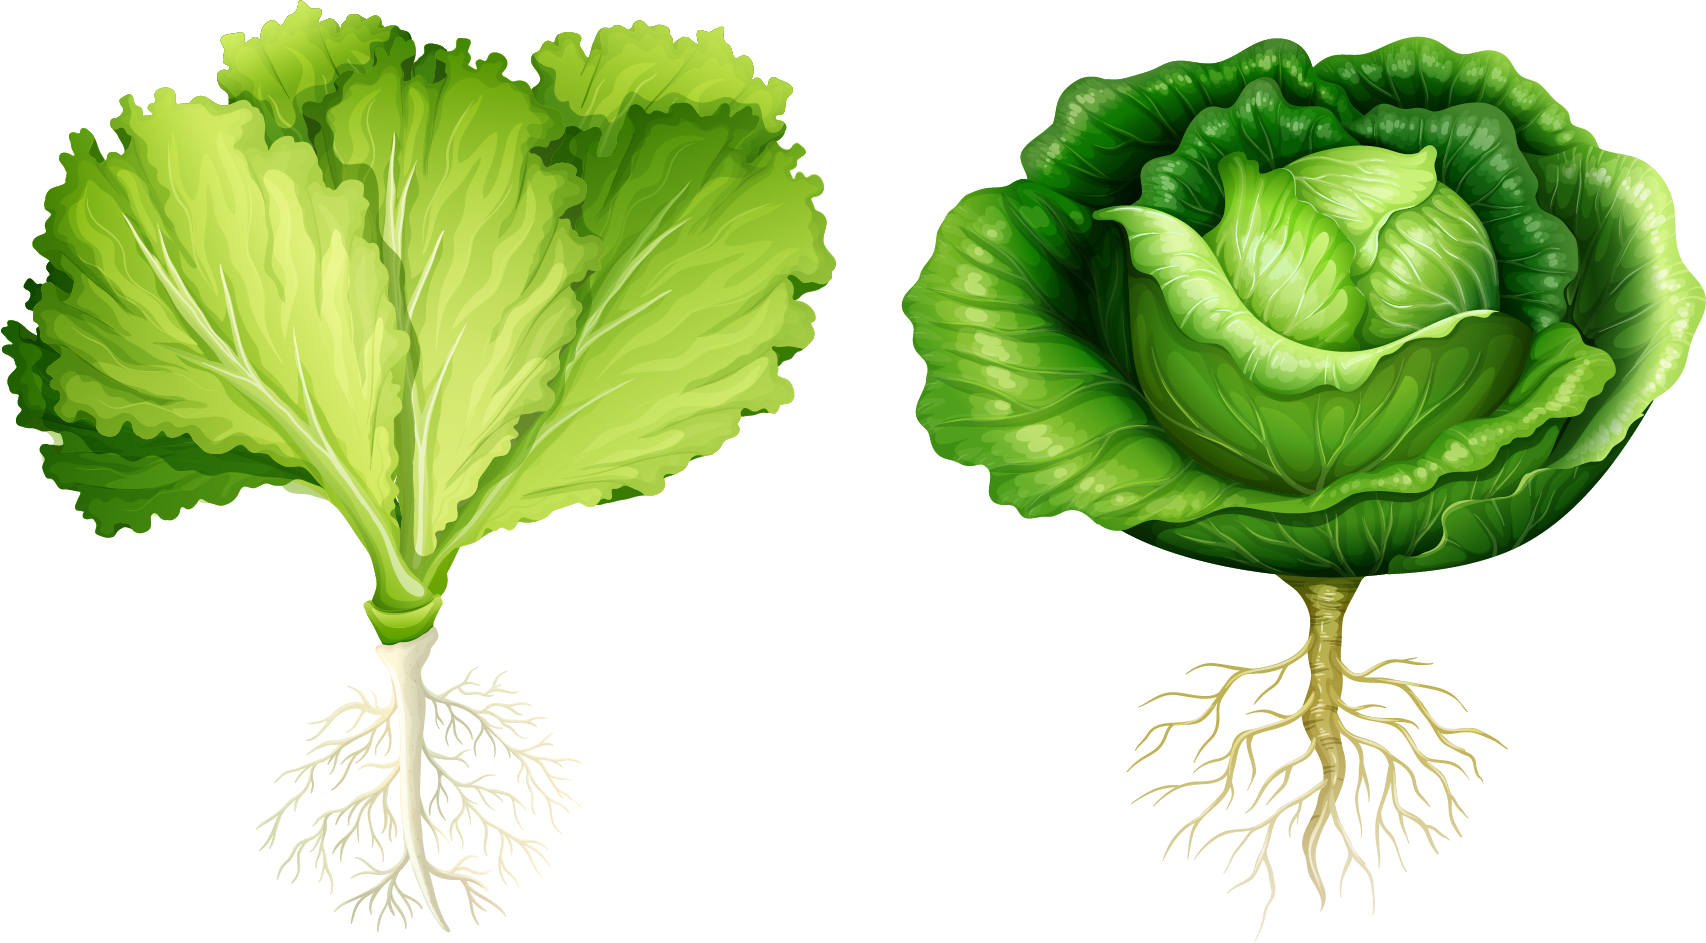 Lettuce Root Vegetable Illustration - Start With Letter V (1706x943)